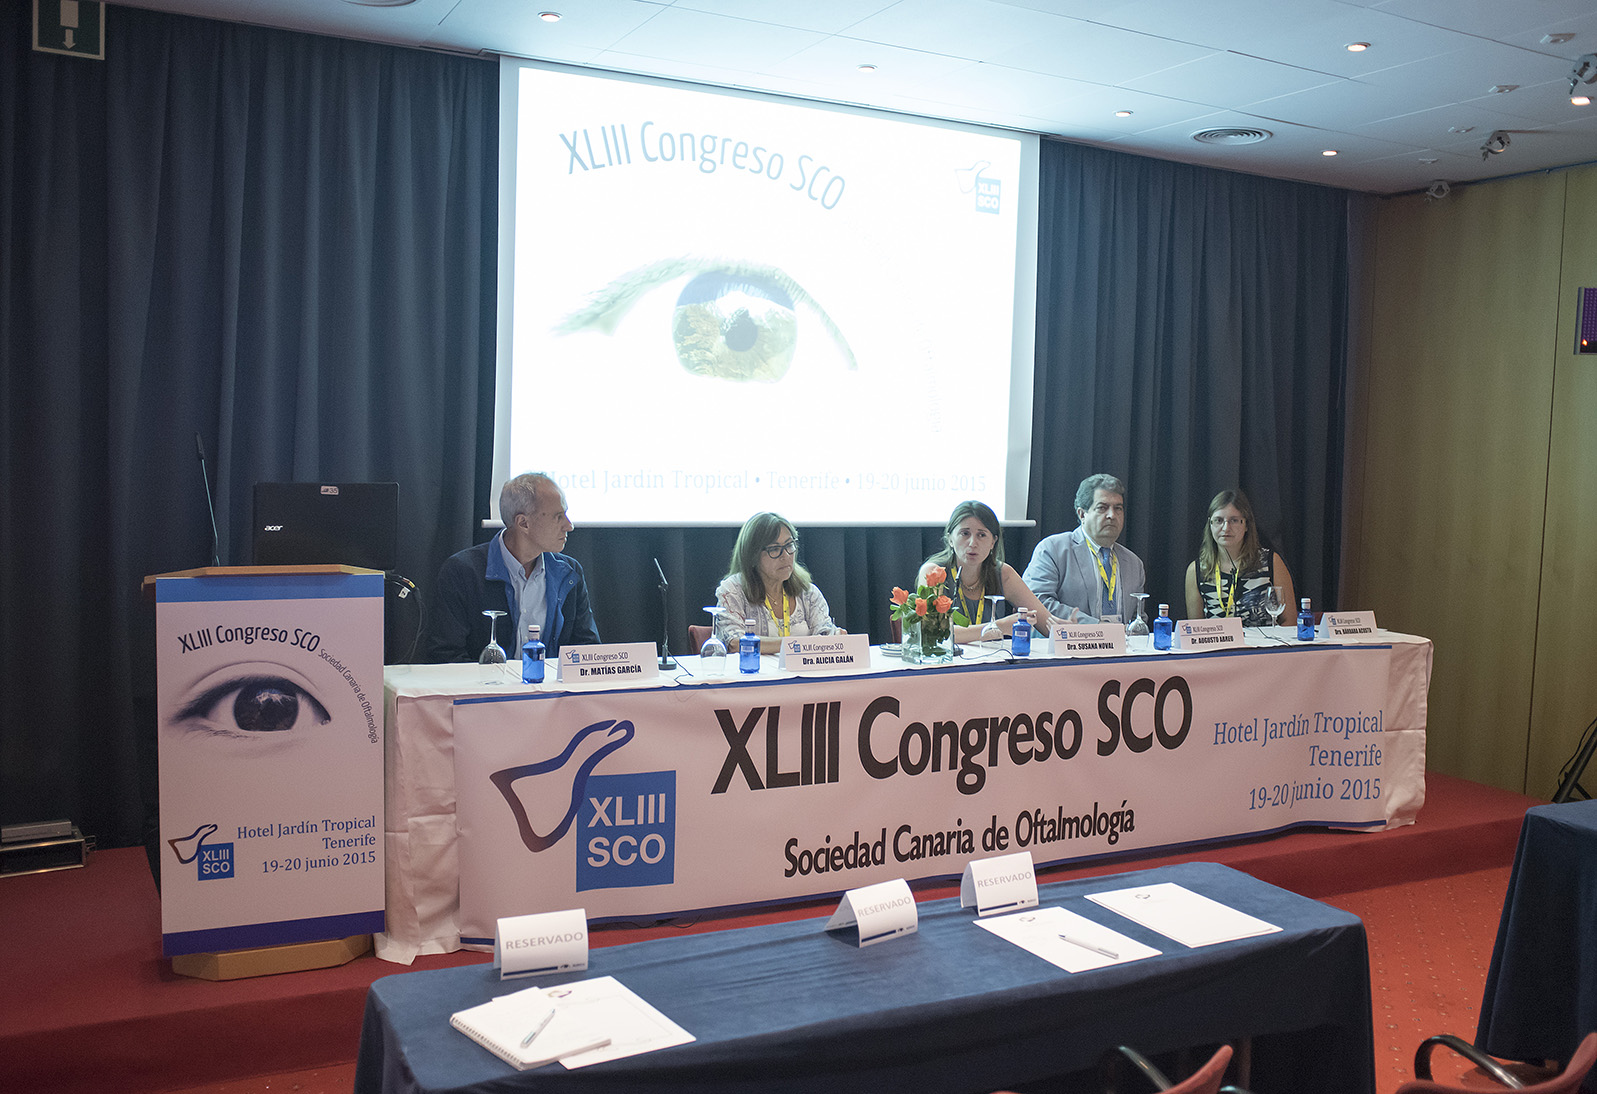 XLIII Congreso de la Sociedad Canaria de Oftalmología